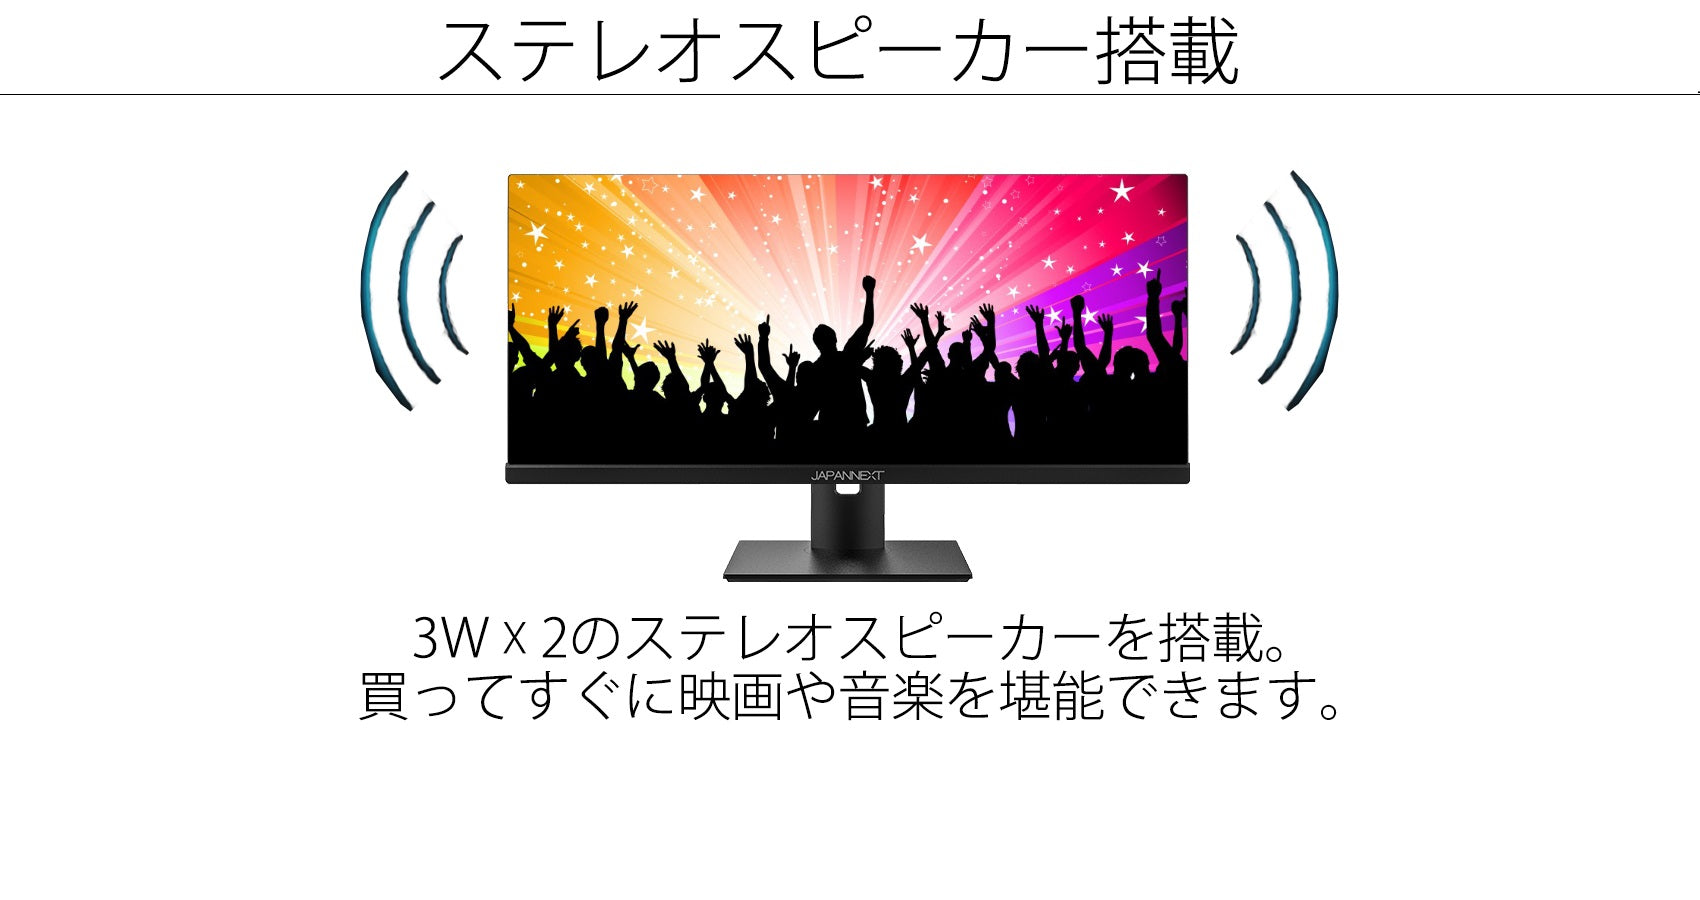 待望の再入荷! JAPANNEXT 29インチ ワイドFHD(2560 x 1080) 液晶